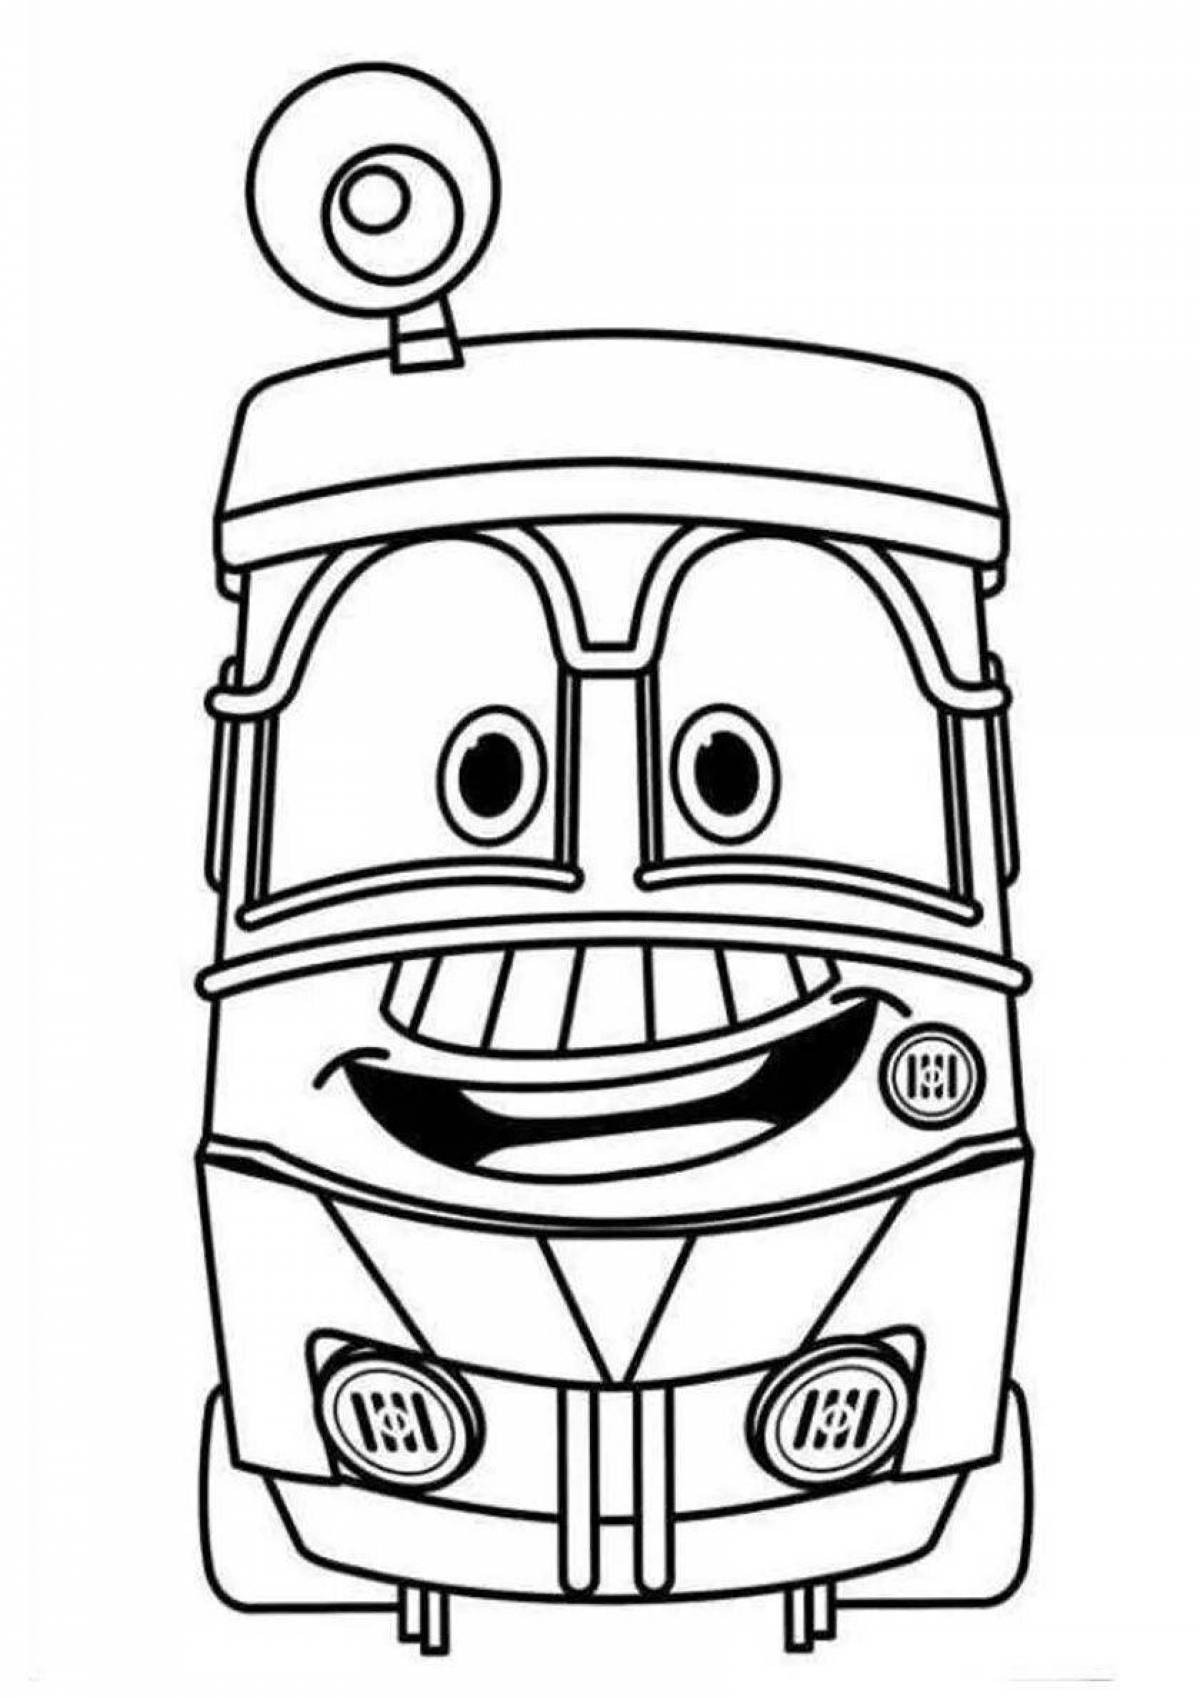 Charming kay train robots coloring book